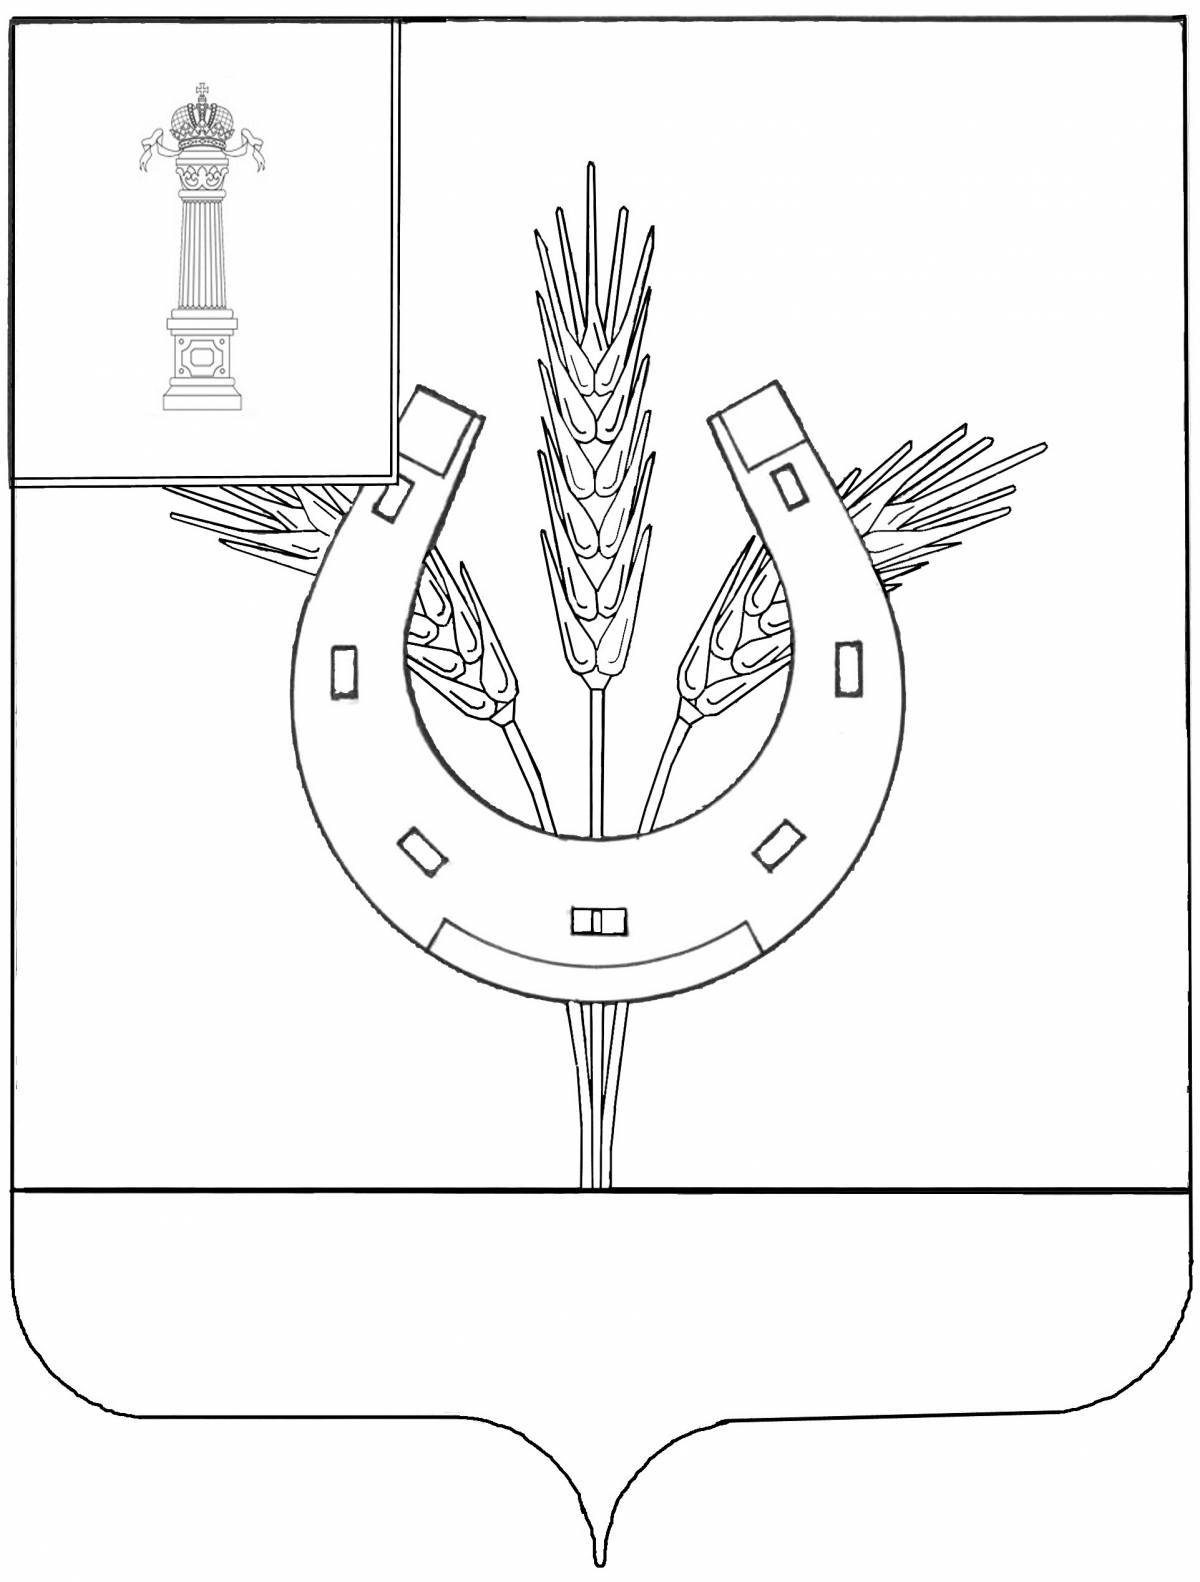 Жирный герб ульяновской области